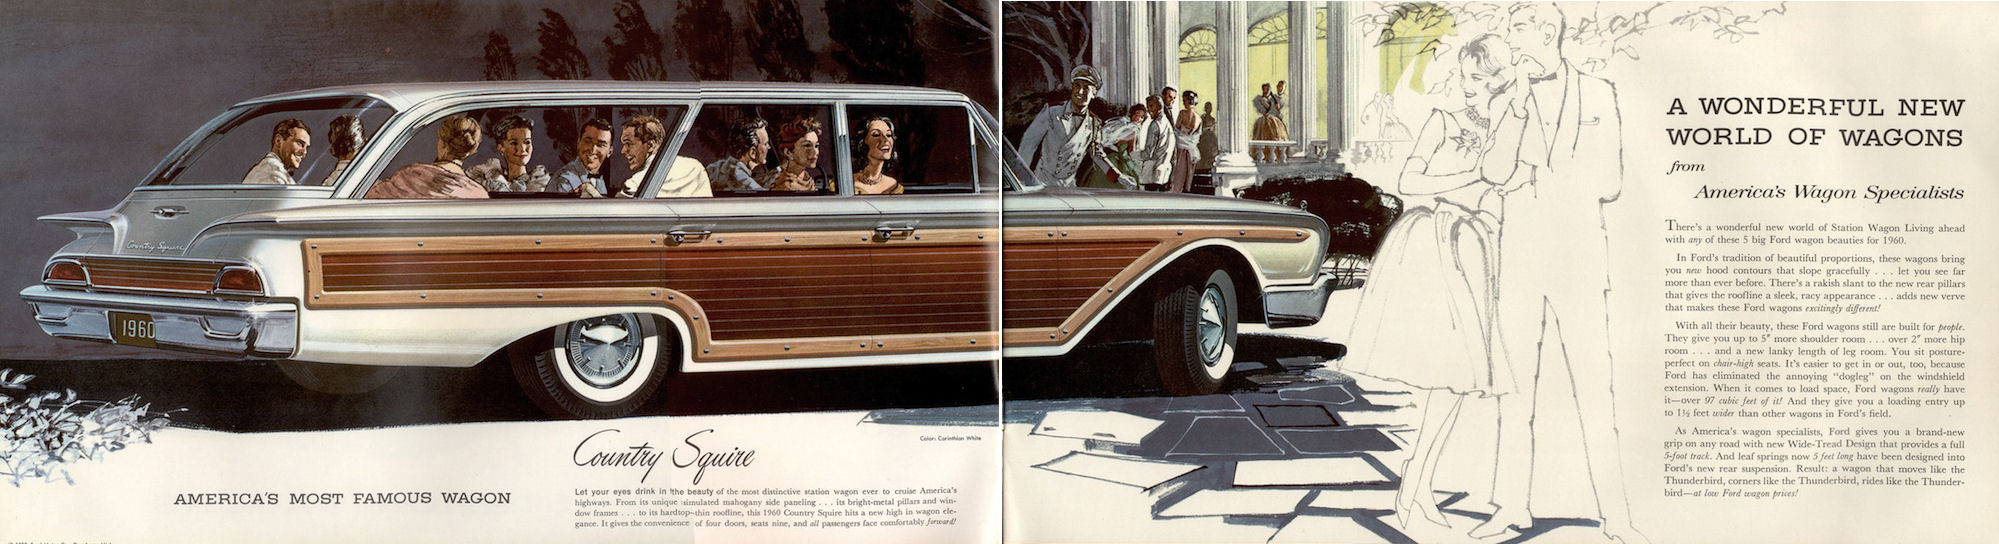 1960_Ford_Wagons_Prestige-02-03